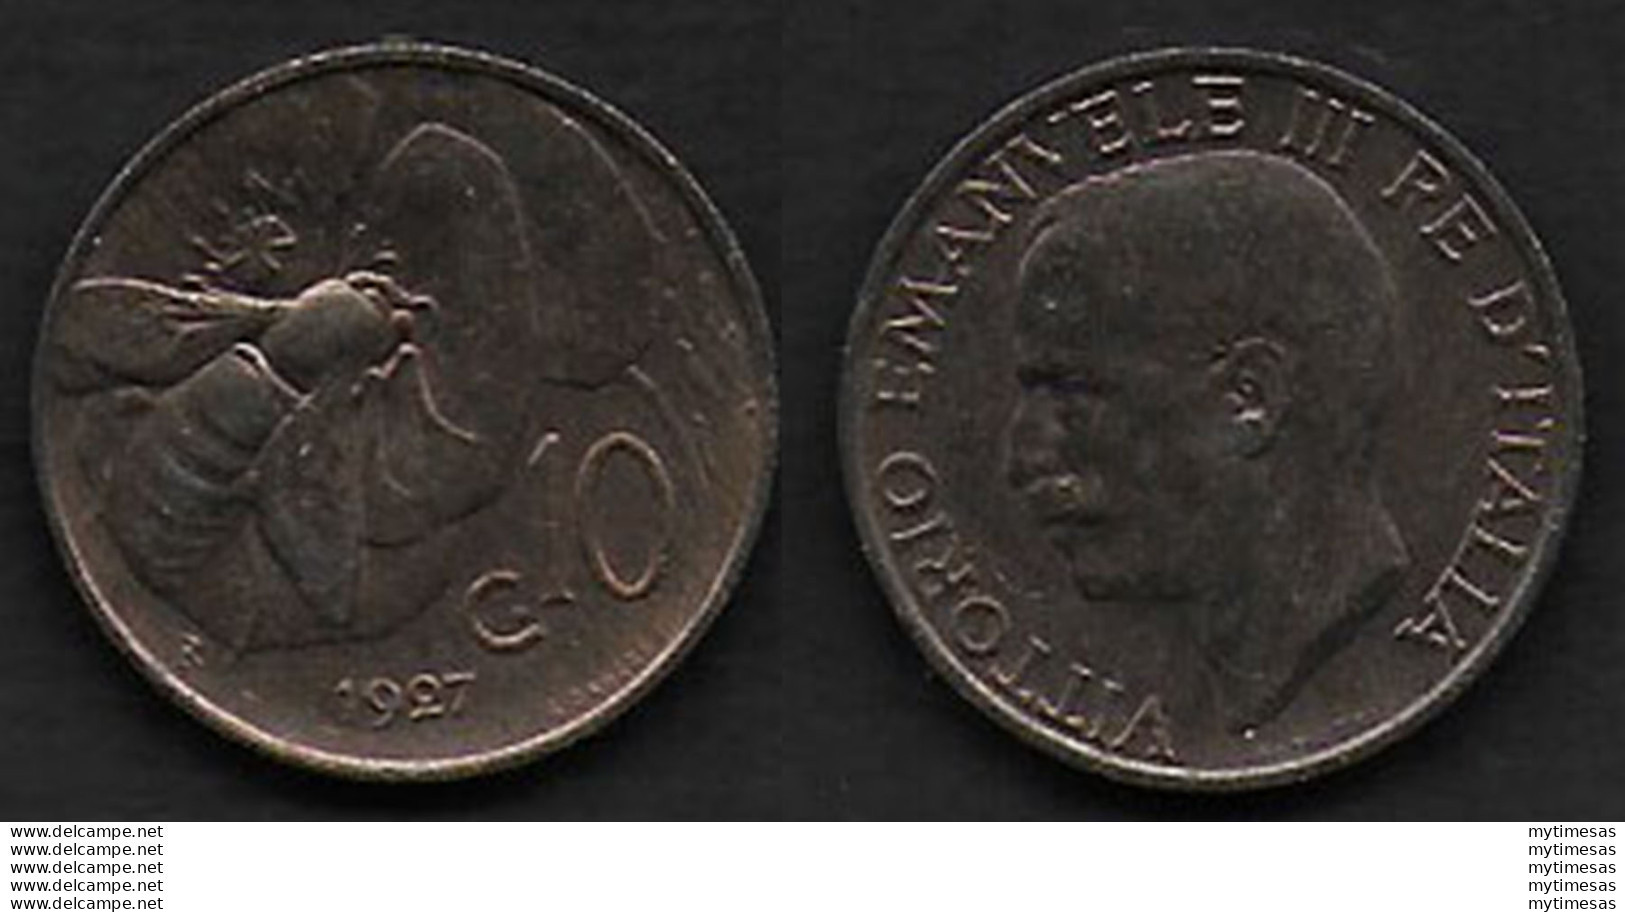 1927 Italia VE III 10c. Ape In Rame FDC - 1900-1946 : Victor Emmanuel III & Umberto II